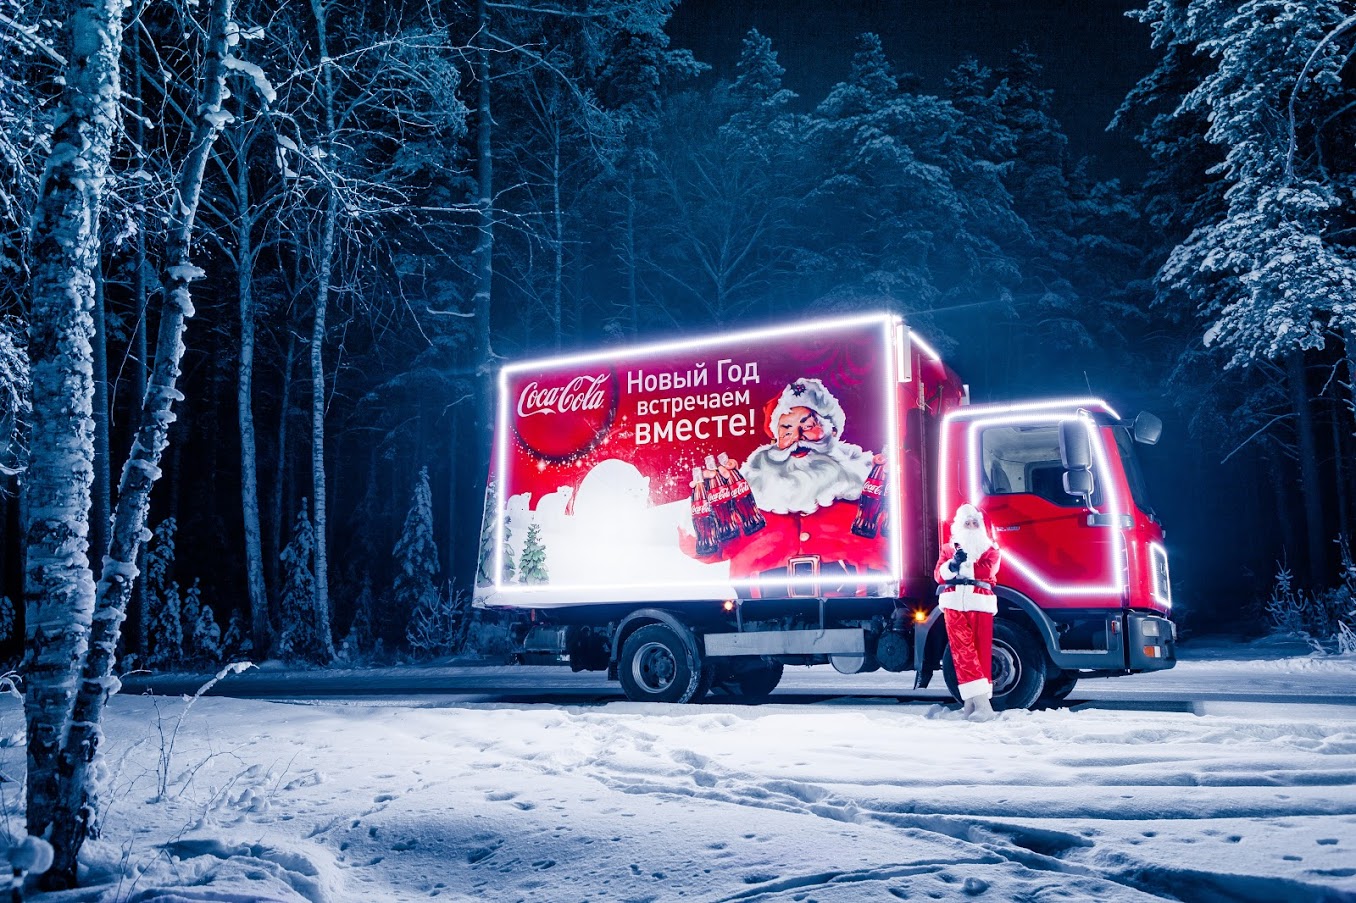 «Рождественский караван Coca-Cola» посетил Тверь